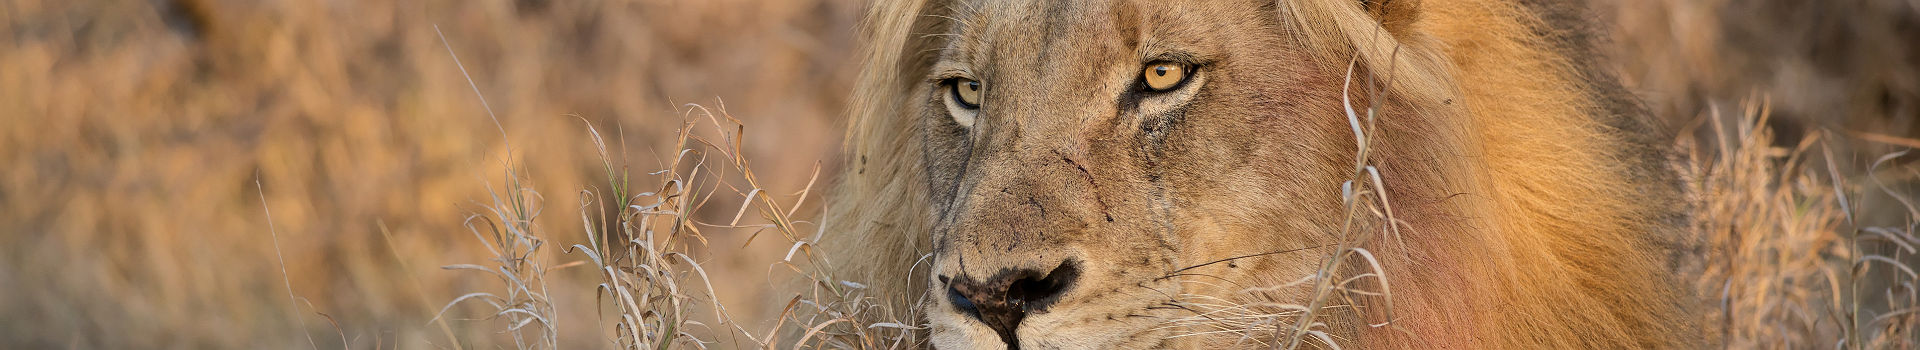 Afrique du Sud - Portrait d'un lion au parc national de Kruger